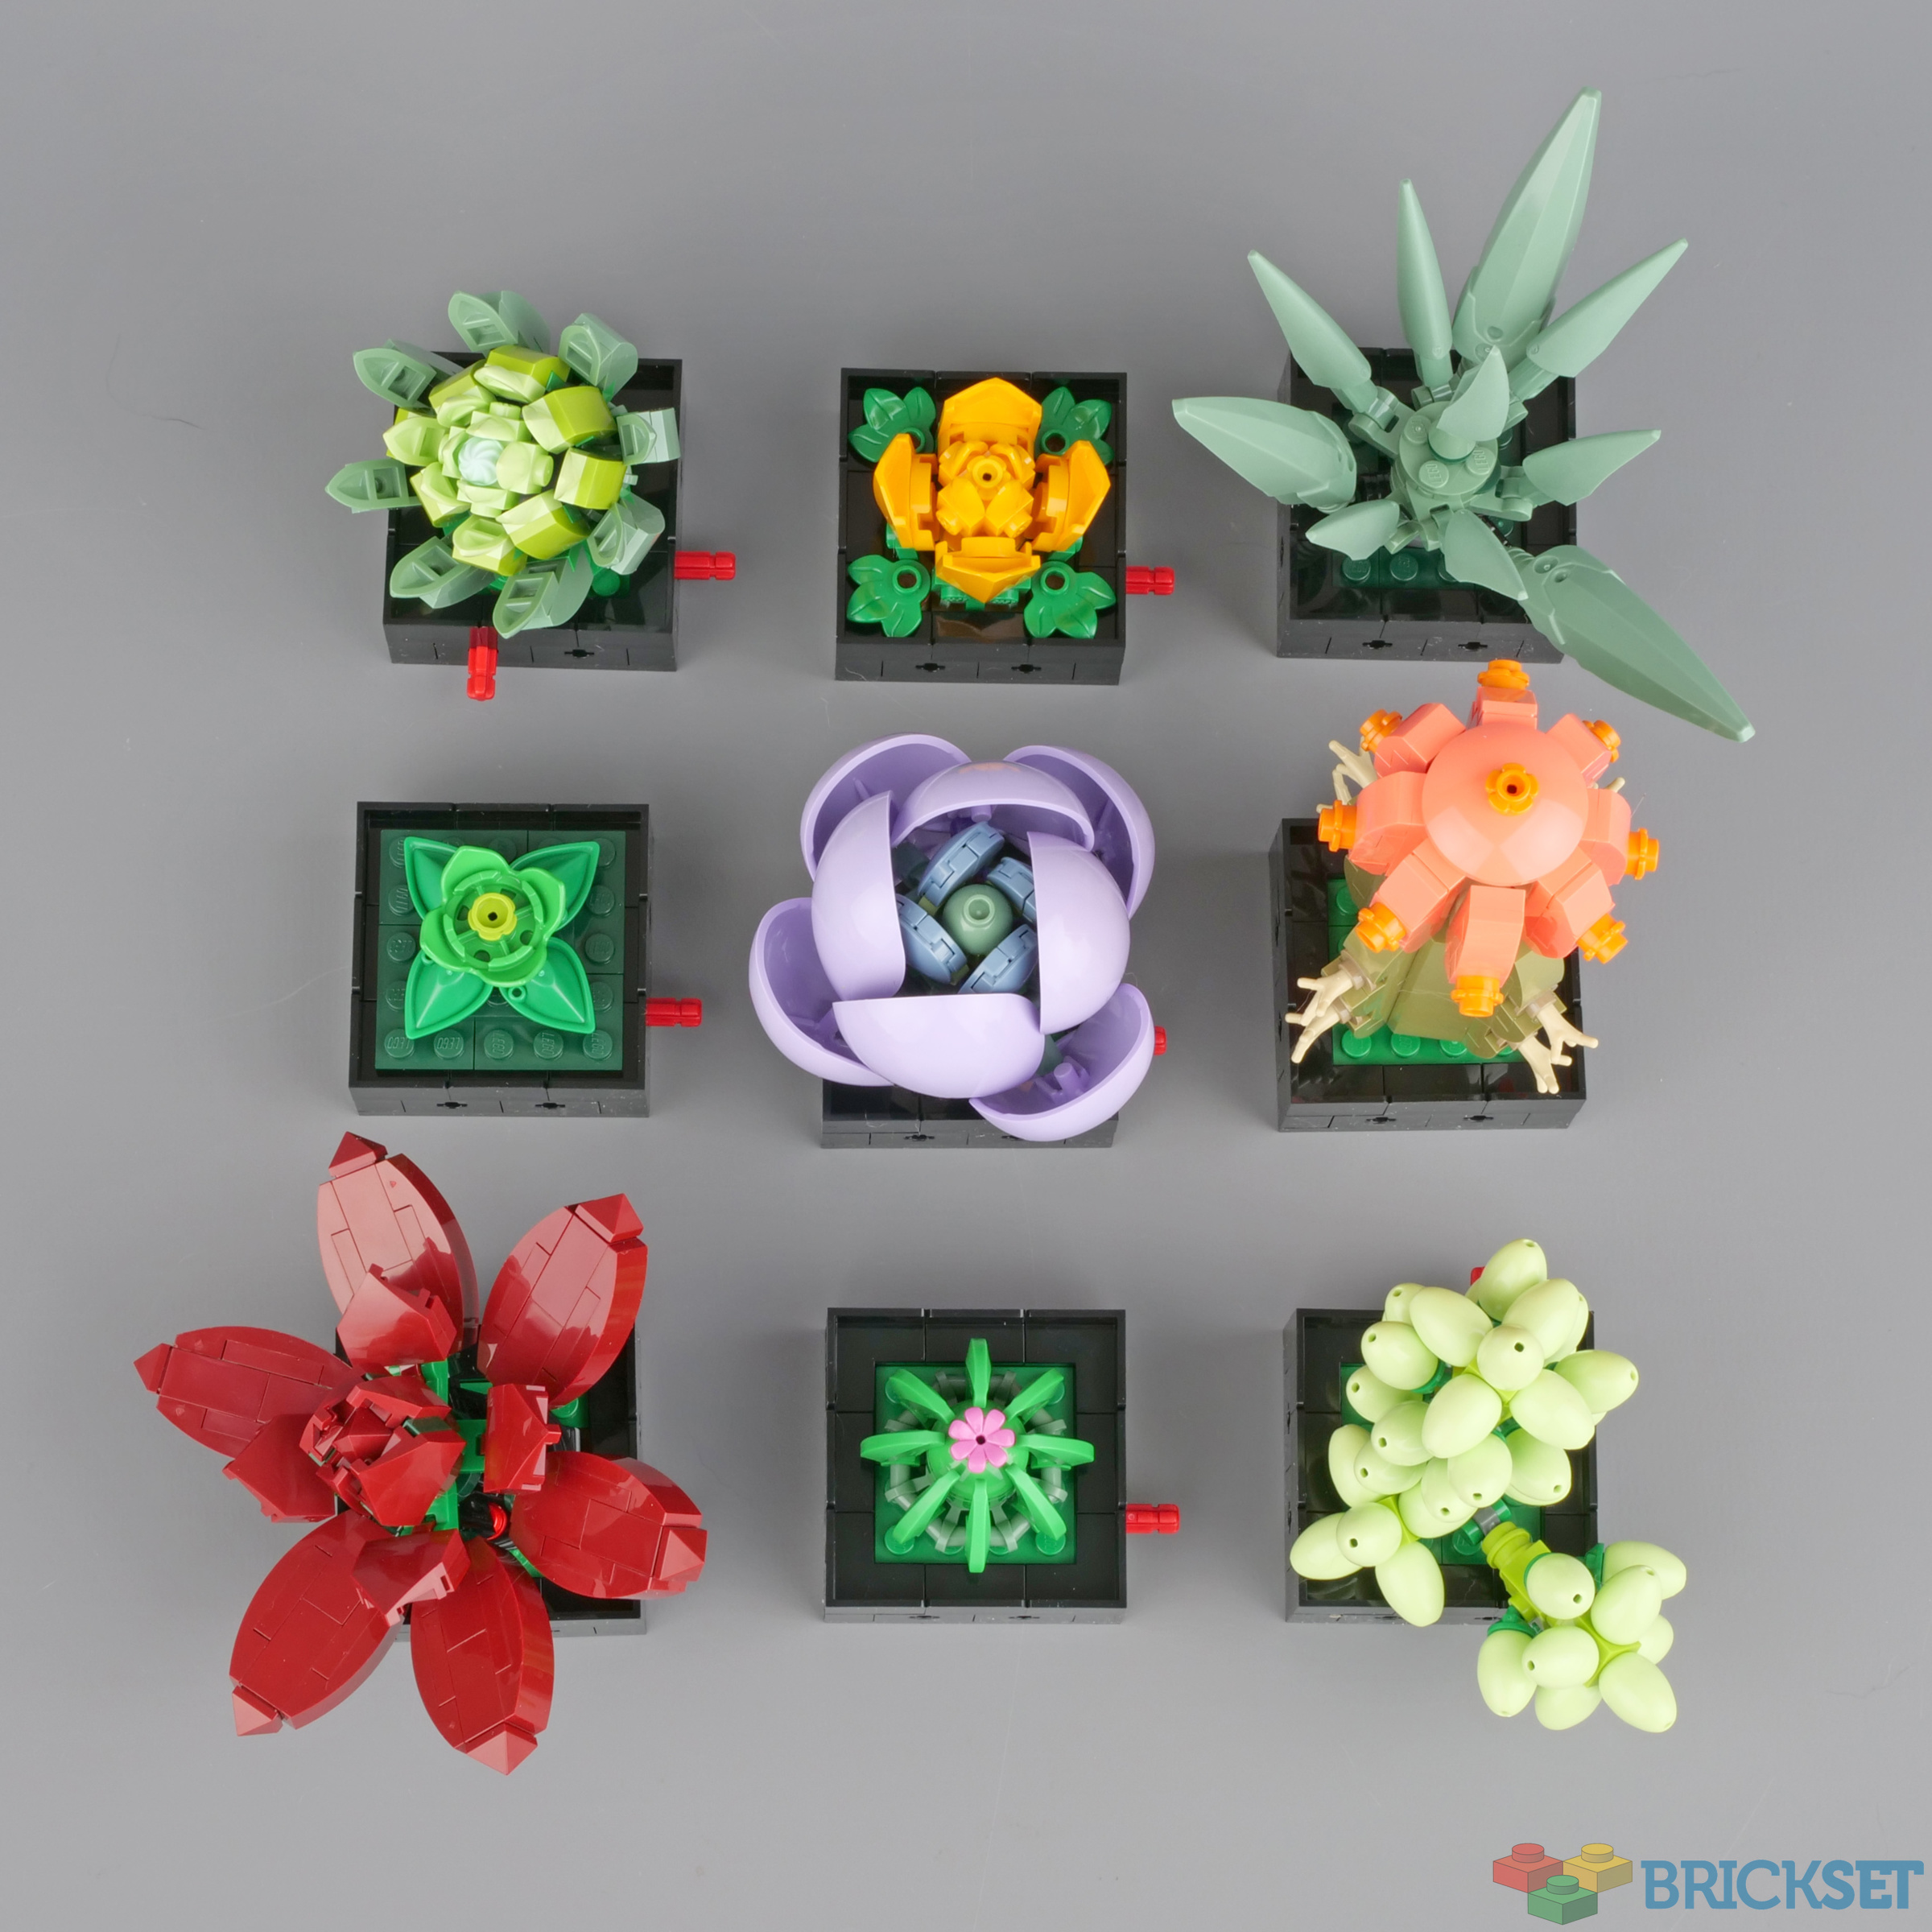 LEGO® Creator Expert Succulents Plant Decor Kit (771 Pieces)